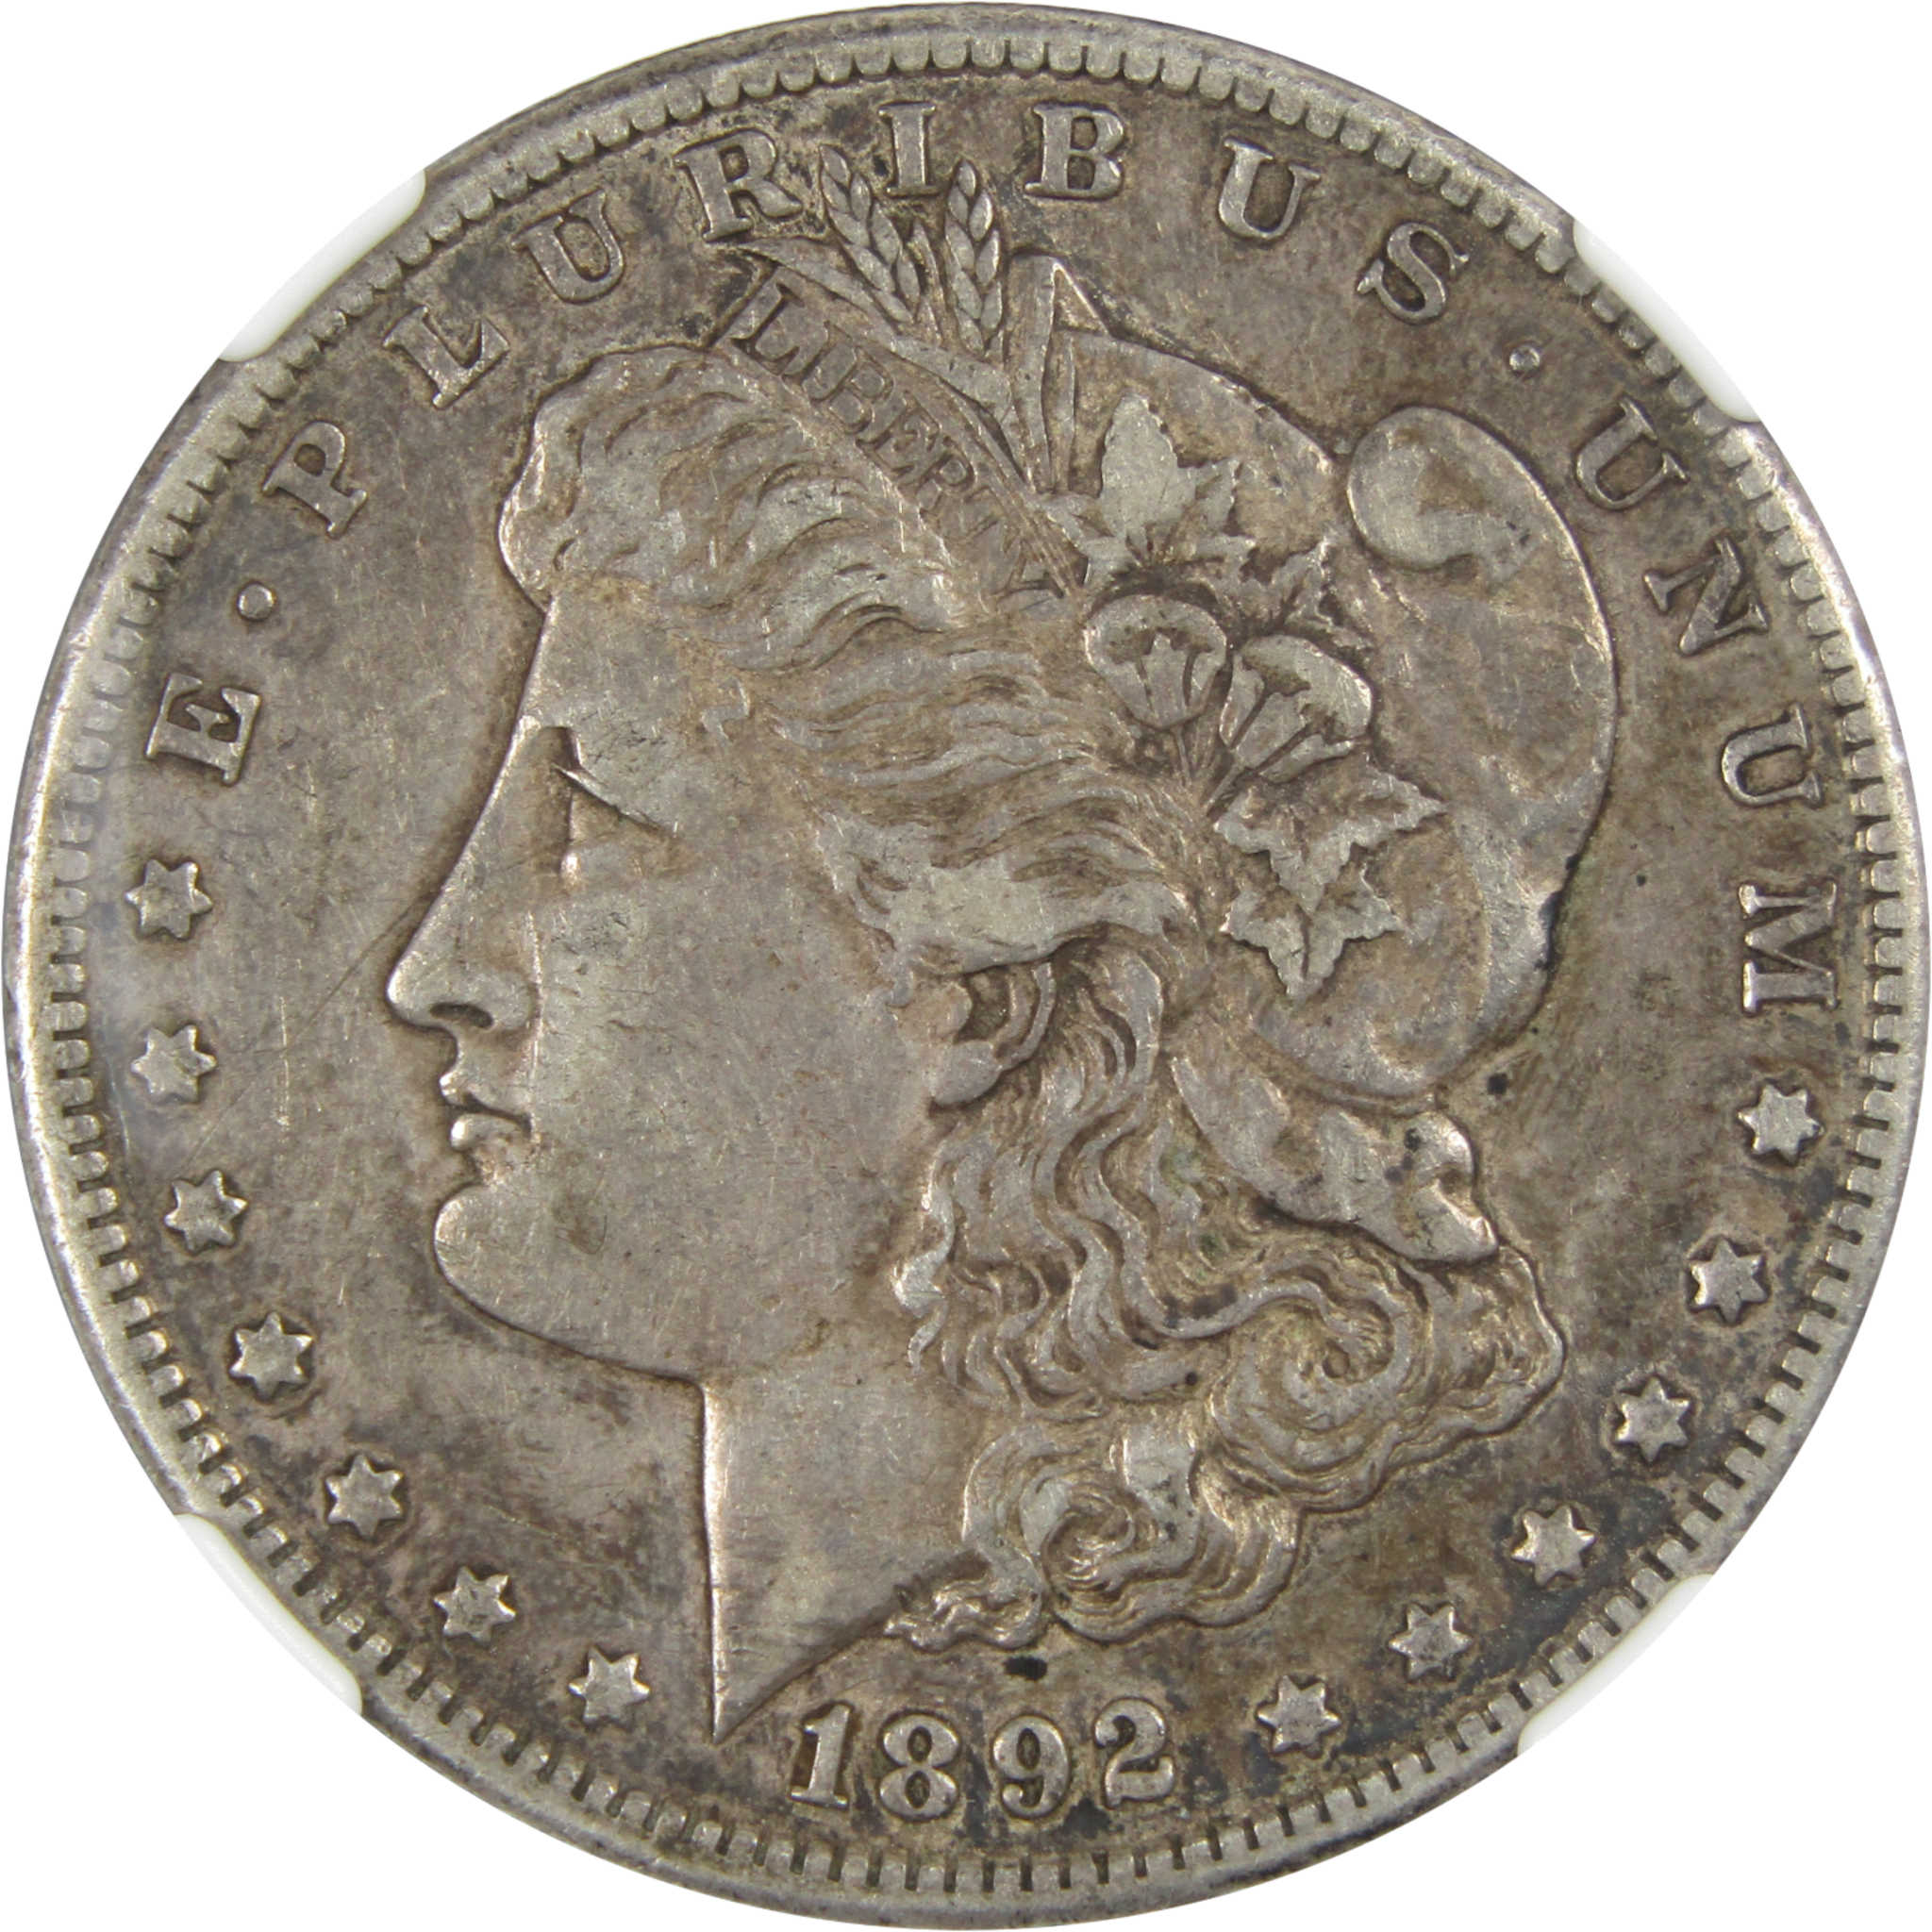 1892 CC Morgan Dollar XF 45 NGC 90% Silver $1 Coin SKU:I7100 - Morgan coin - Morgan silver dollar - Morgan silver dollar for sale - Profile Coins &amp; Collectibles